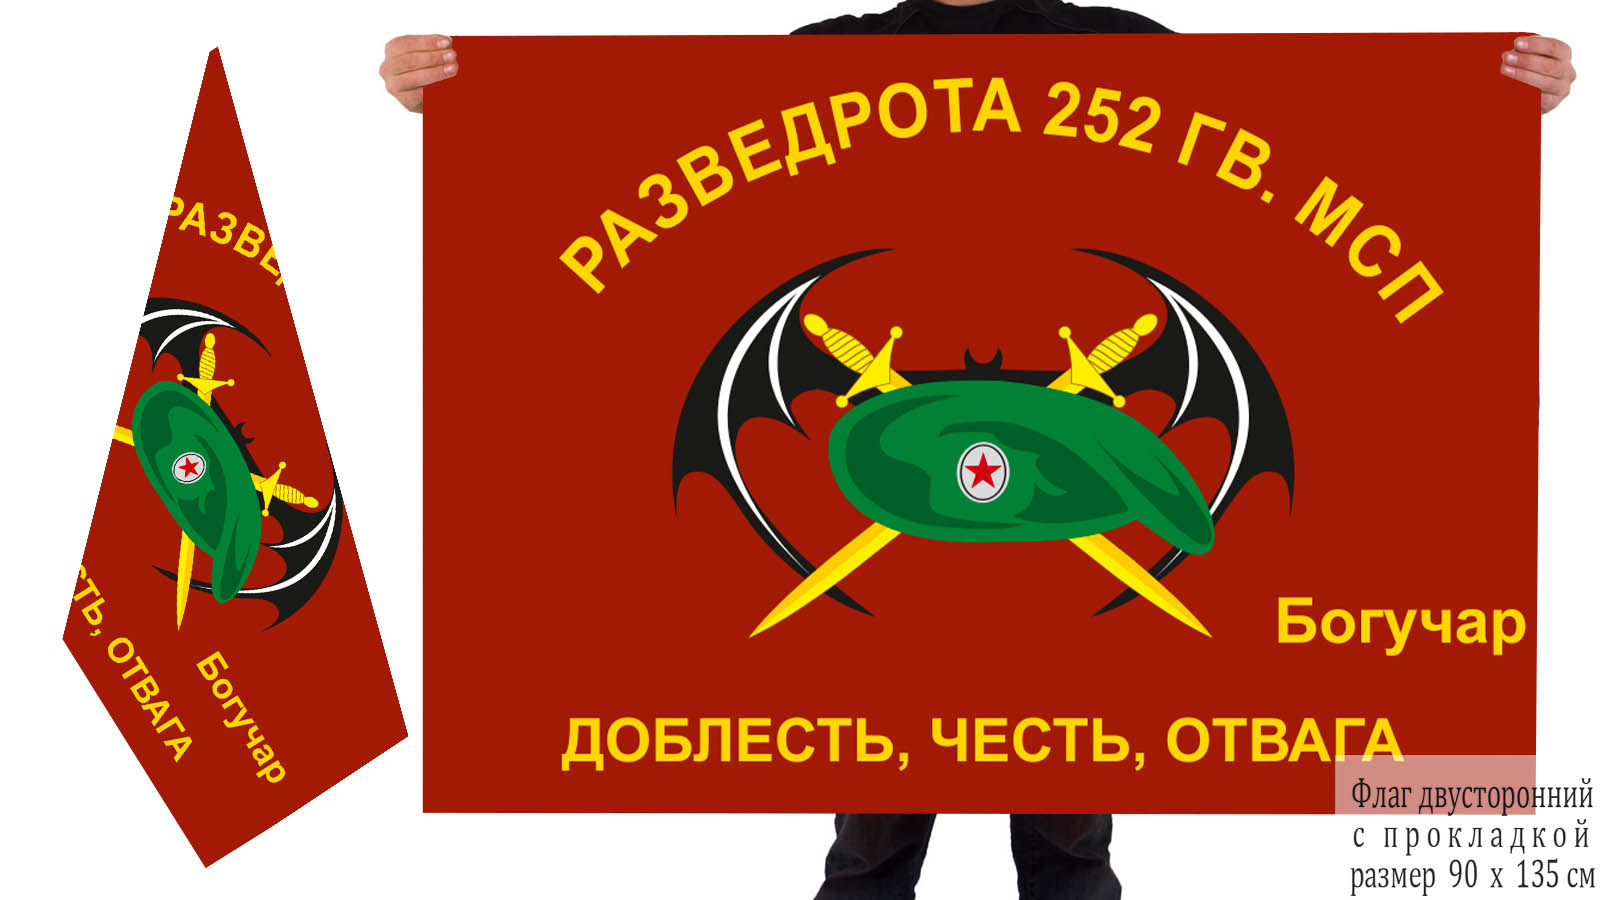 Двусторонний флаг Разведроты 252 Гв. МСП